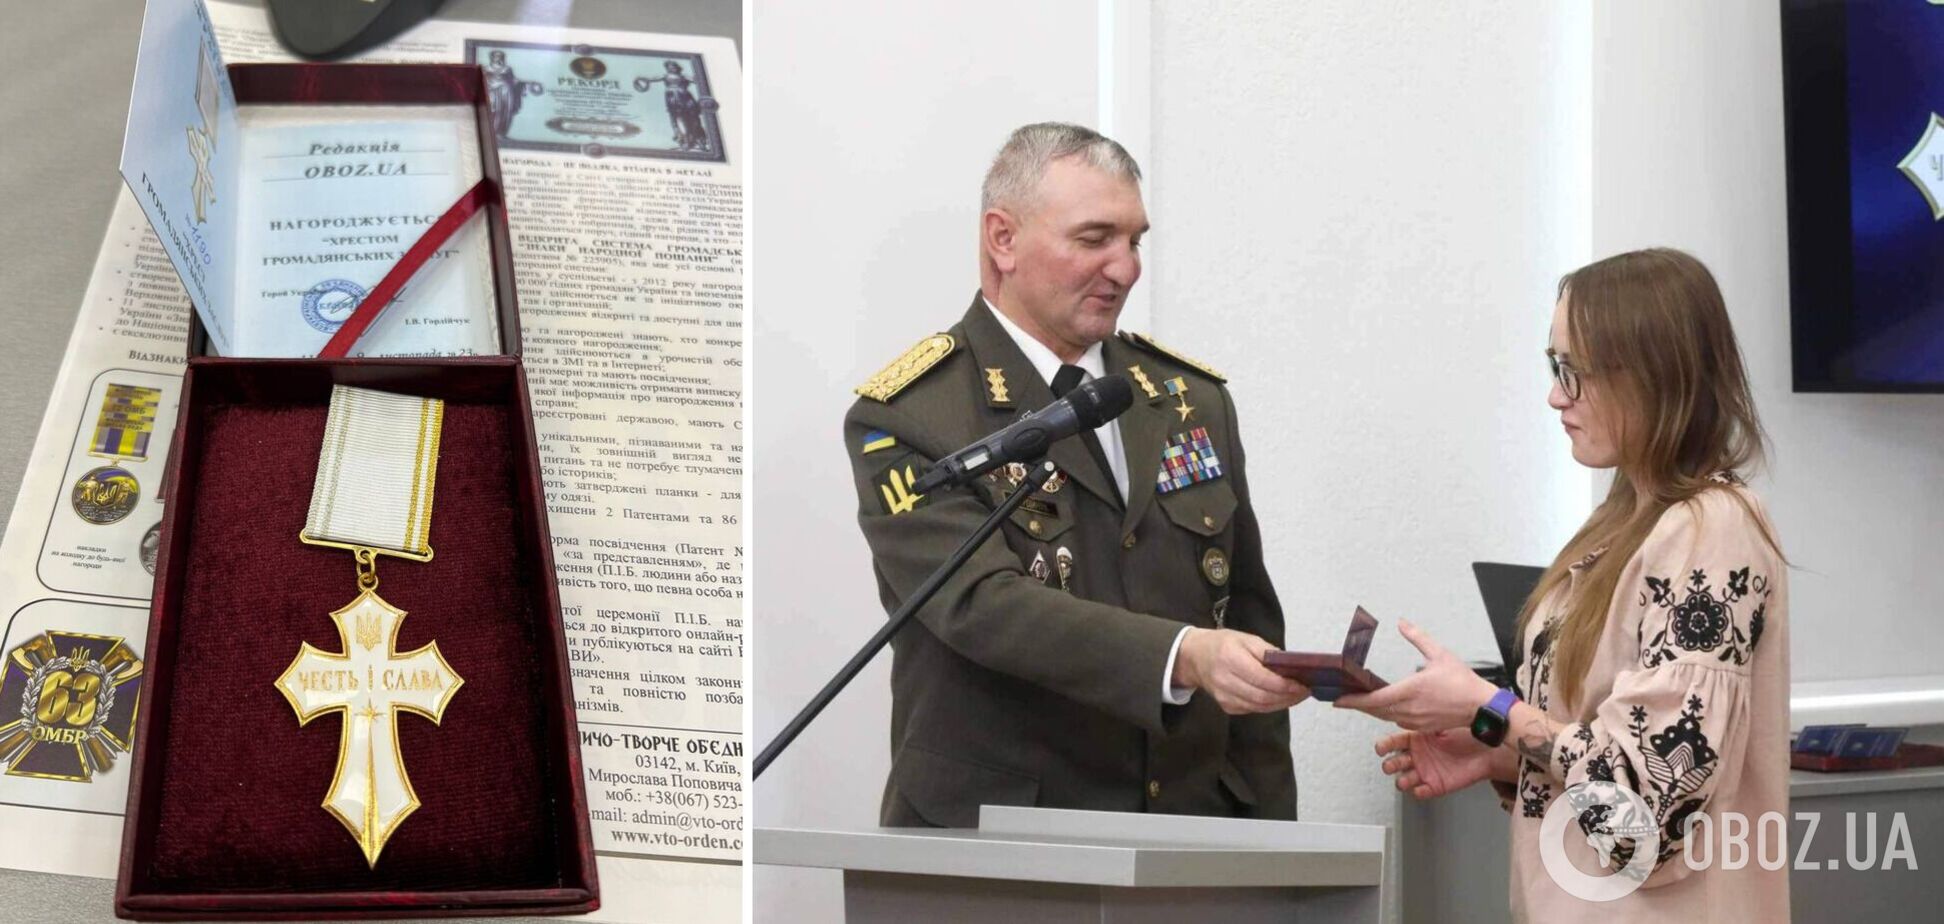 OBOZ.UA получил награду 'Крест гражданских заслуг' за приближение победы в войне с Россией. Фото